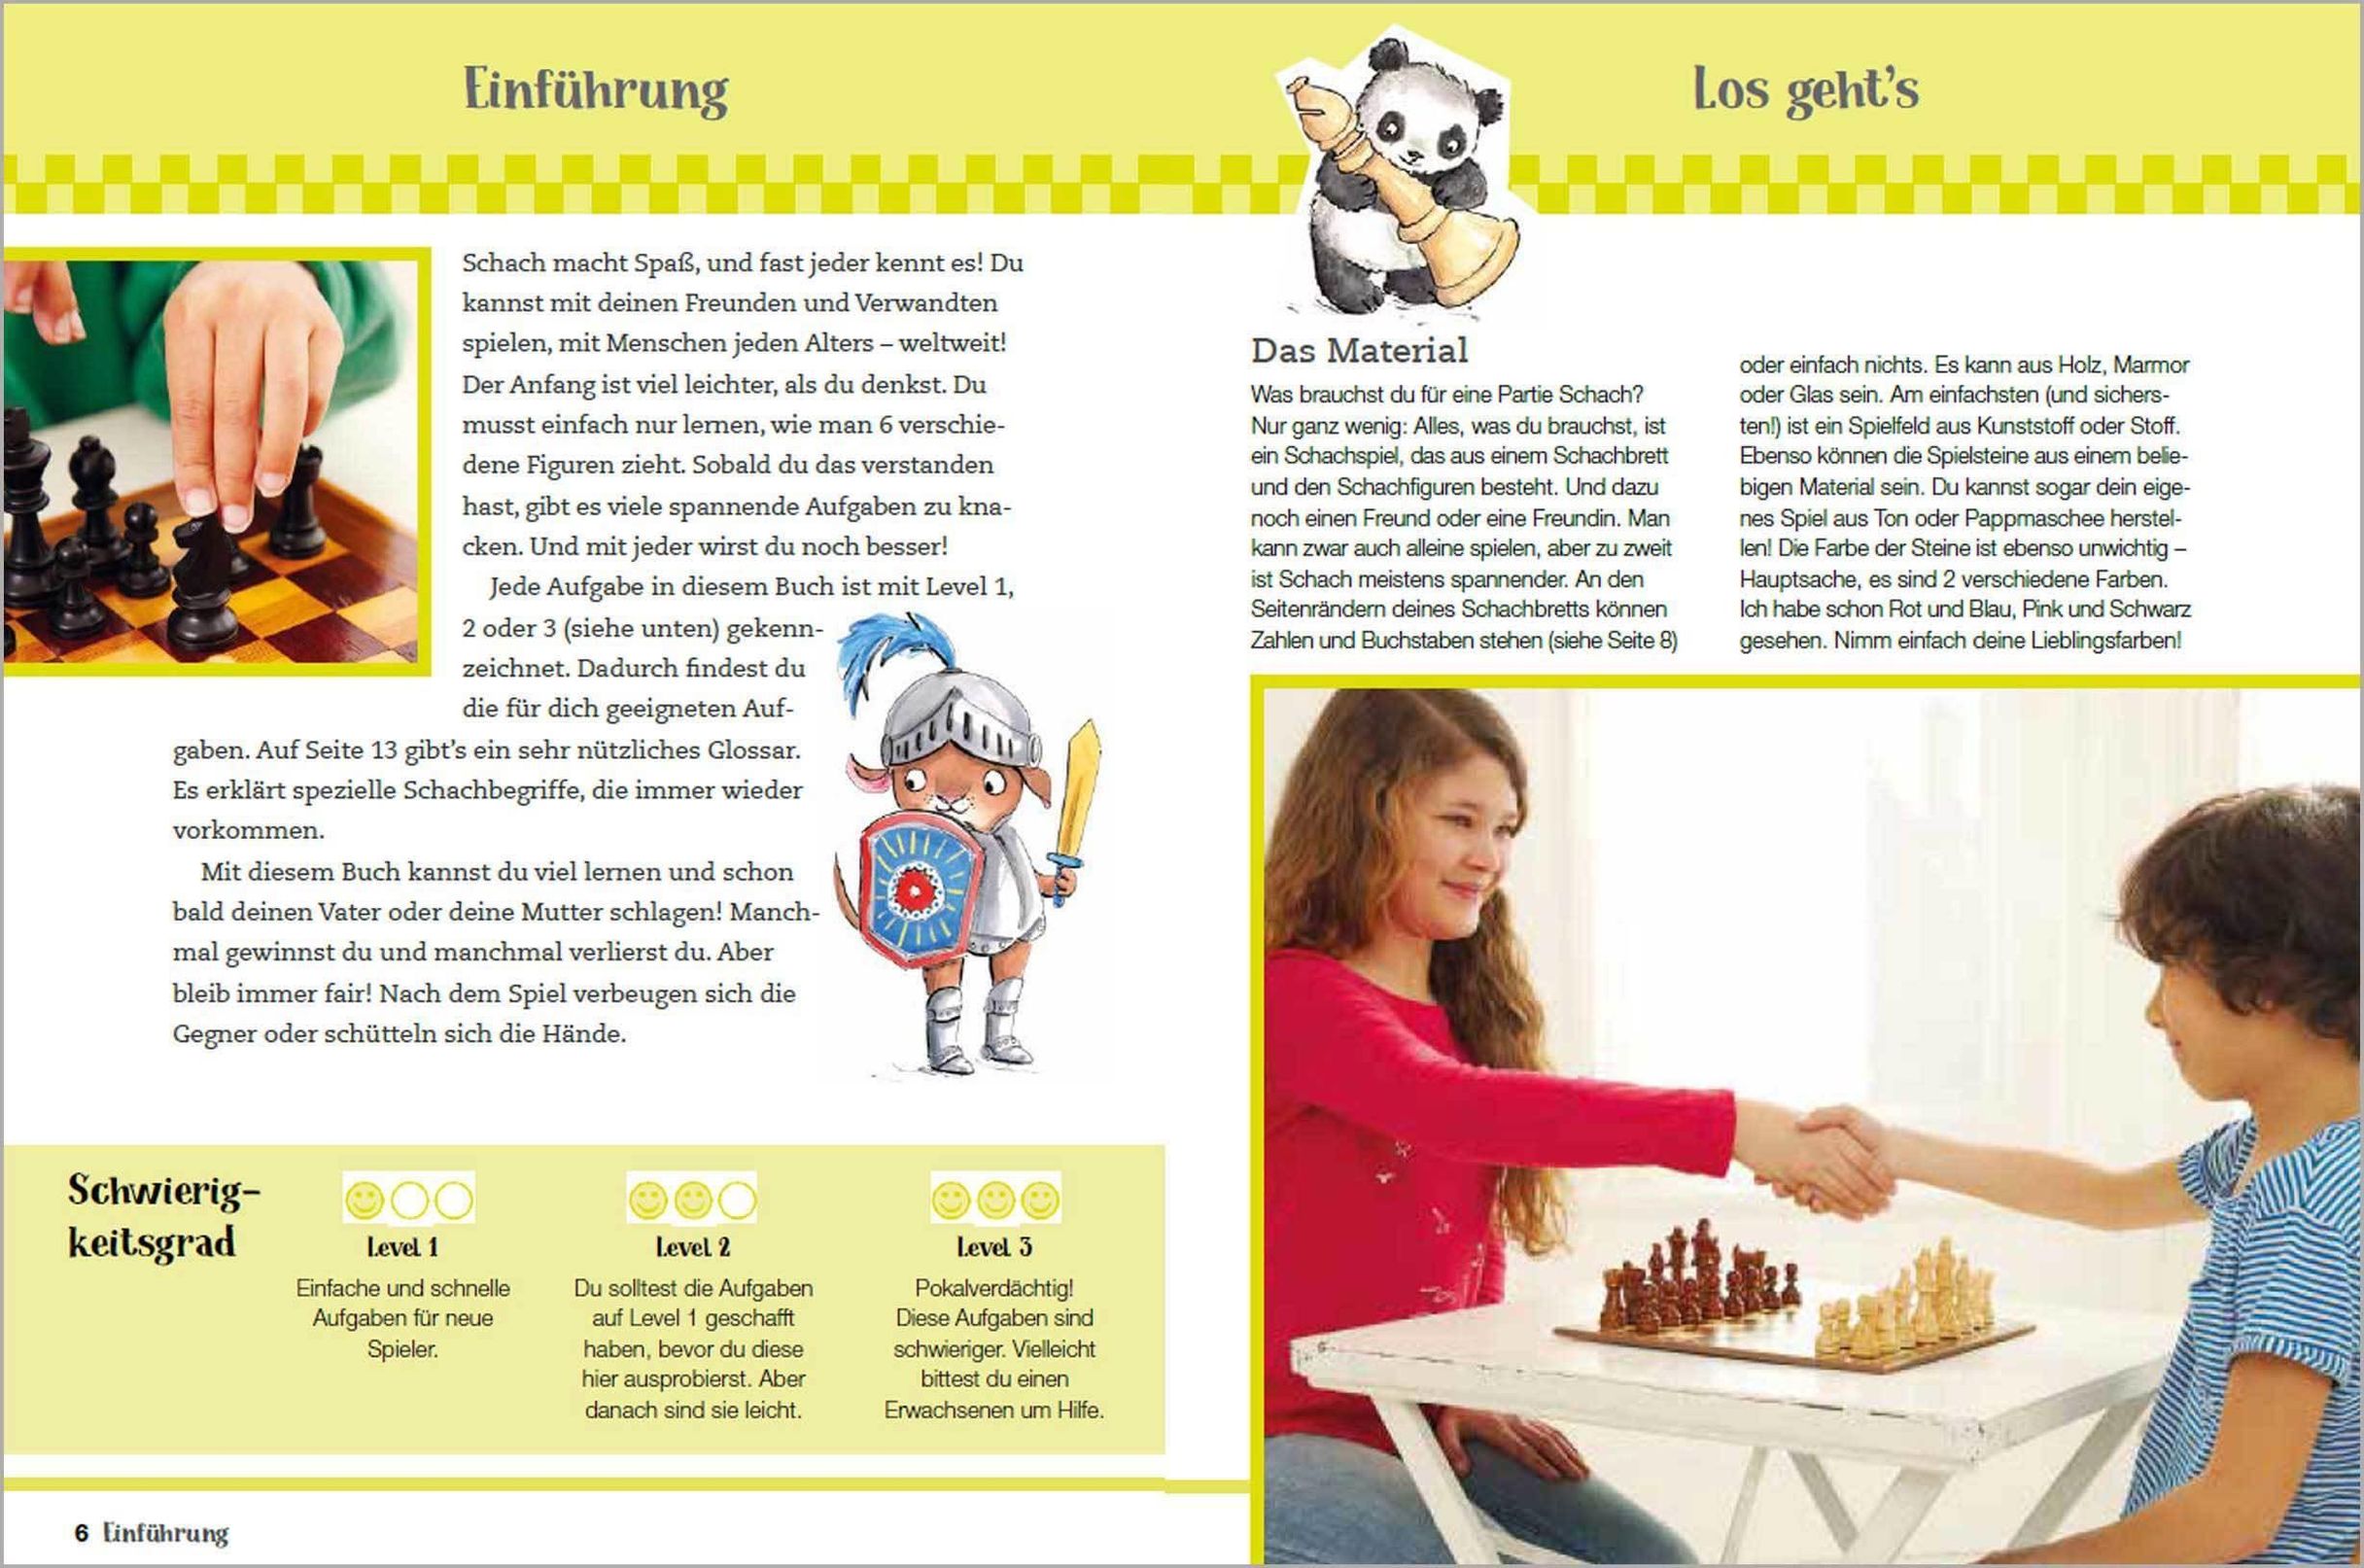 Mein erstes Buch vom Schach. Tricks und Strategien in 3  Schwierigkeitsstufen. Für Kinder ab 7 Jahren | Weltbild.ch